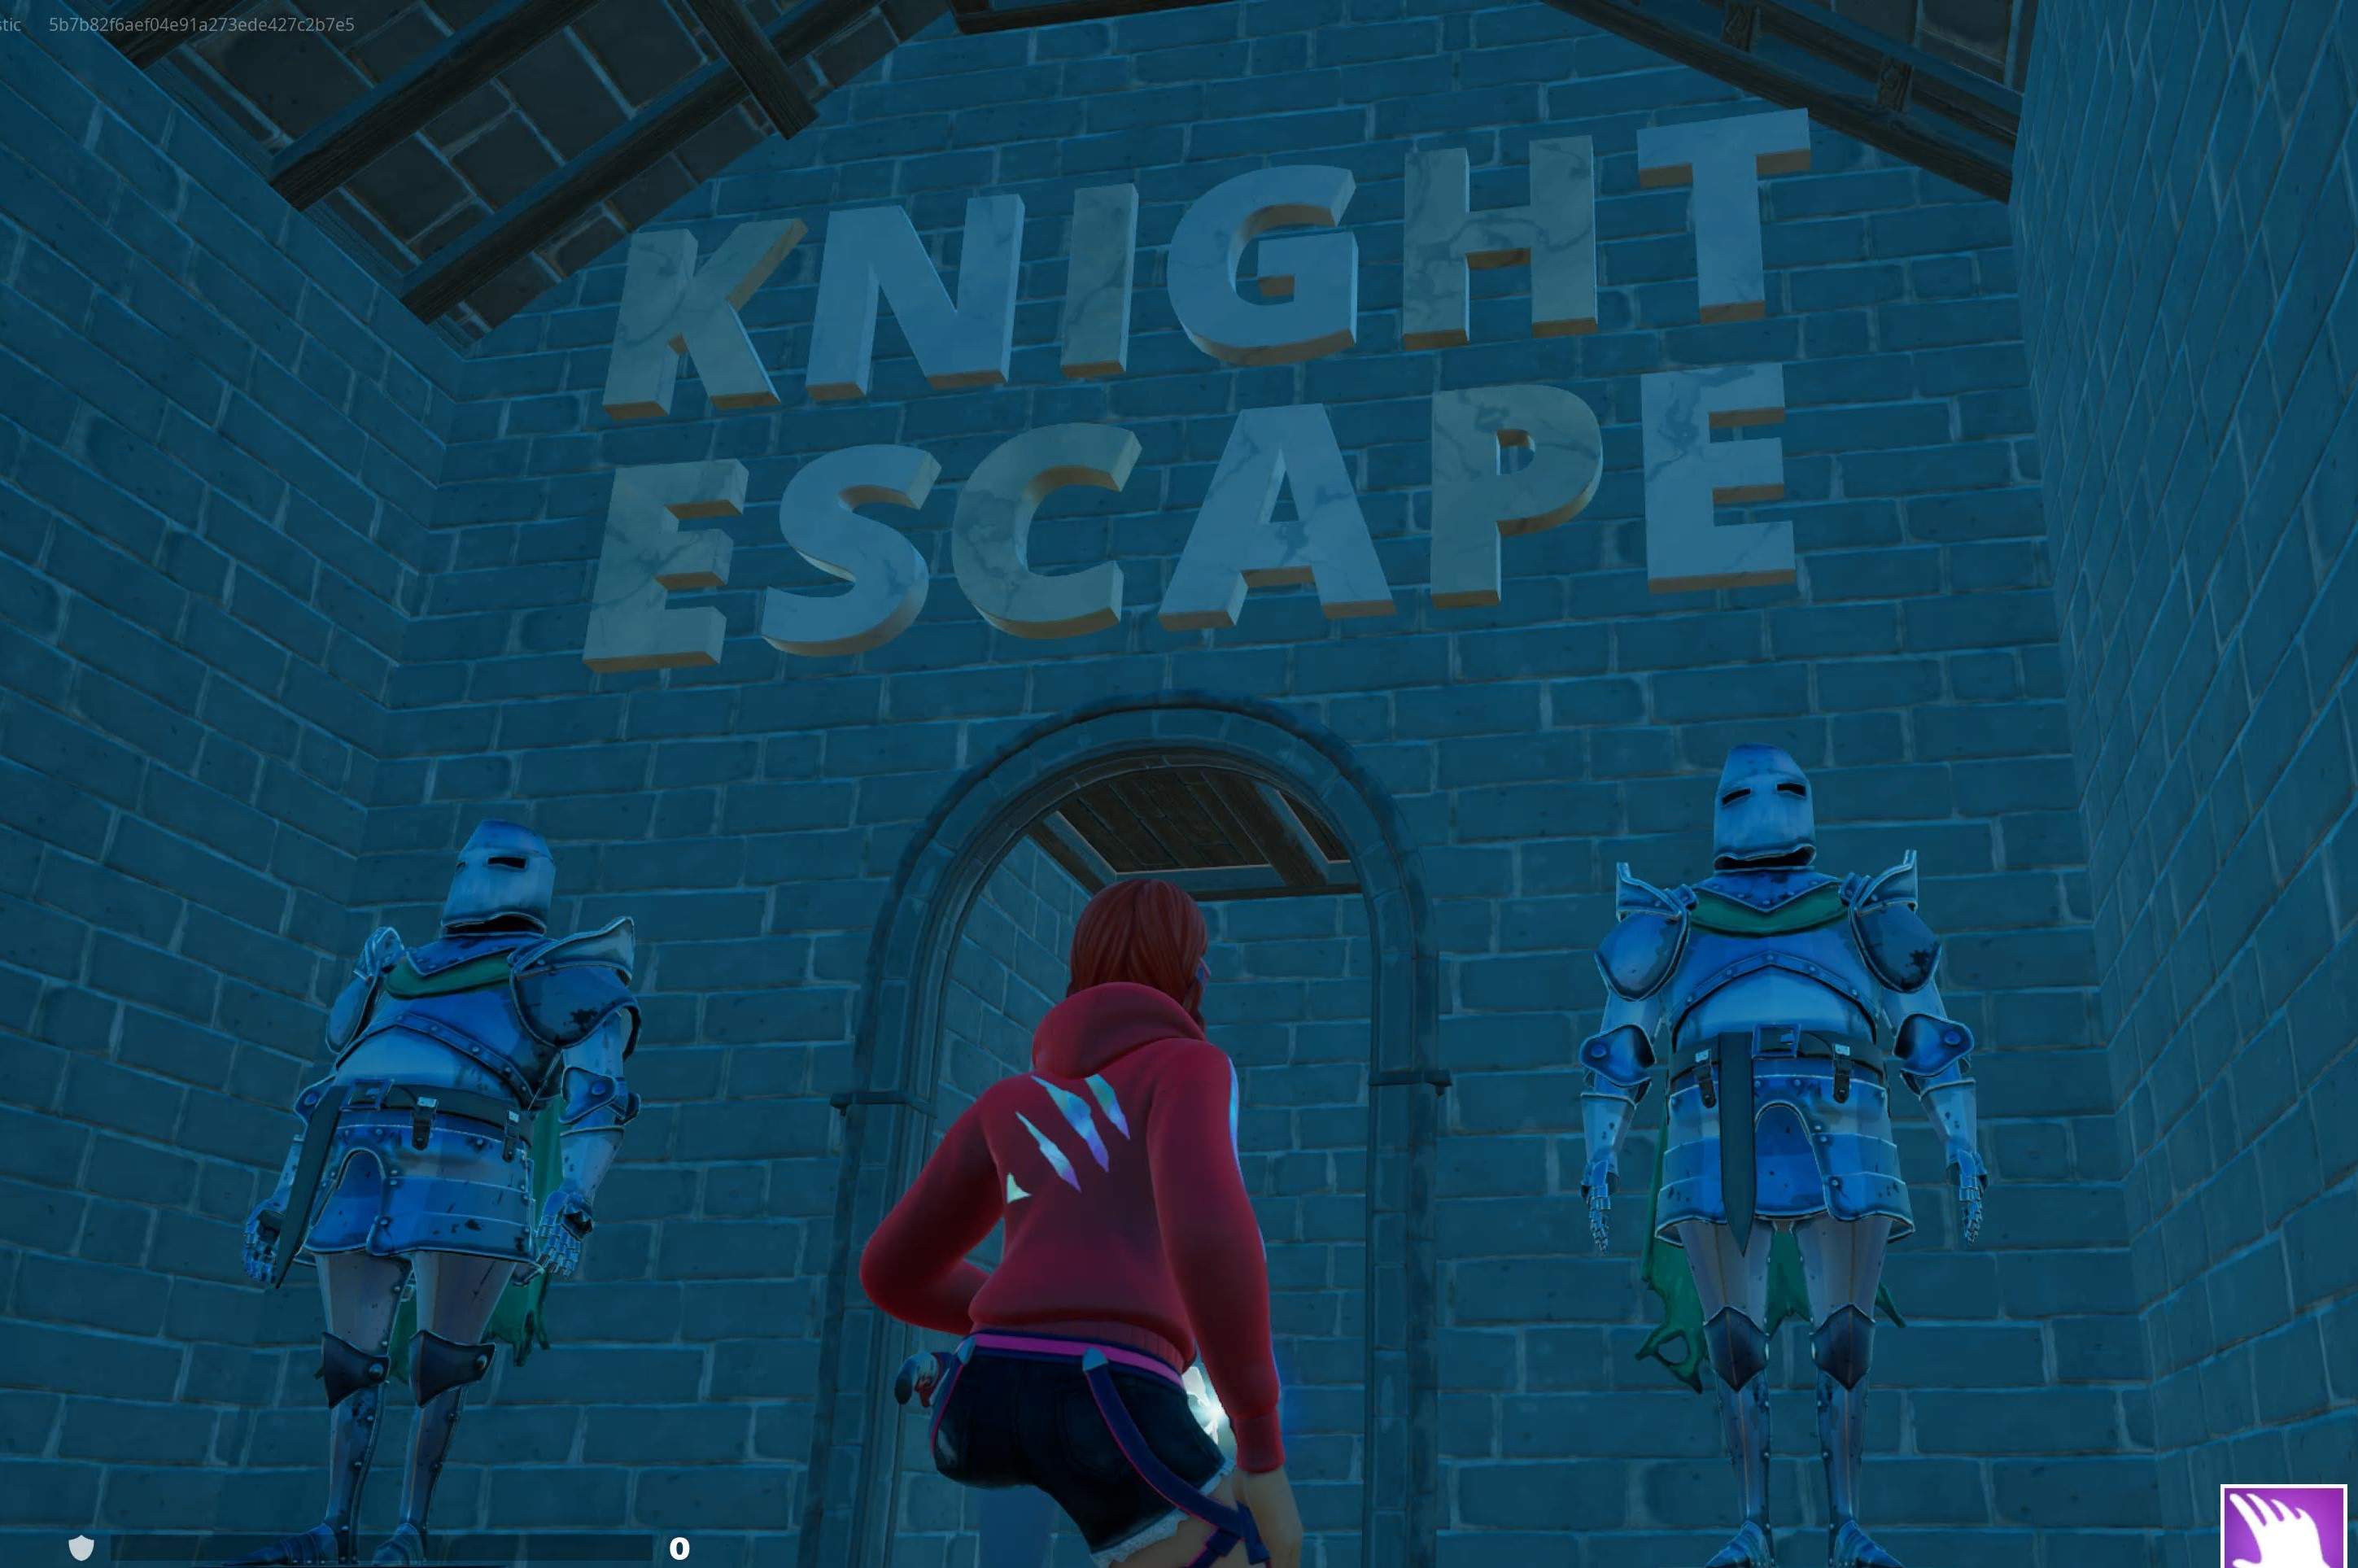 Knight escape room image 2